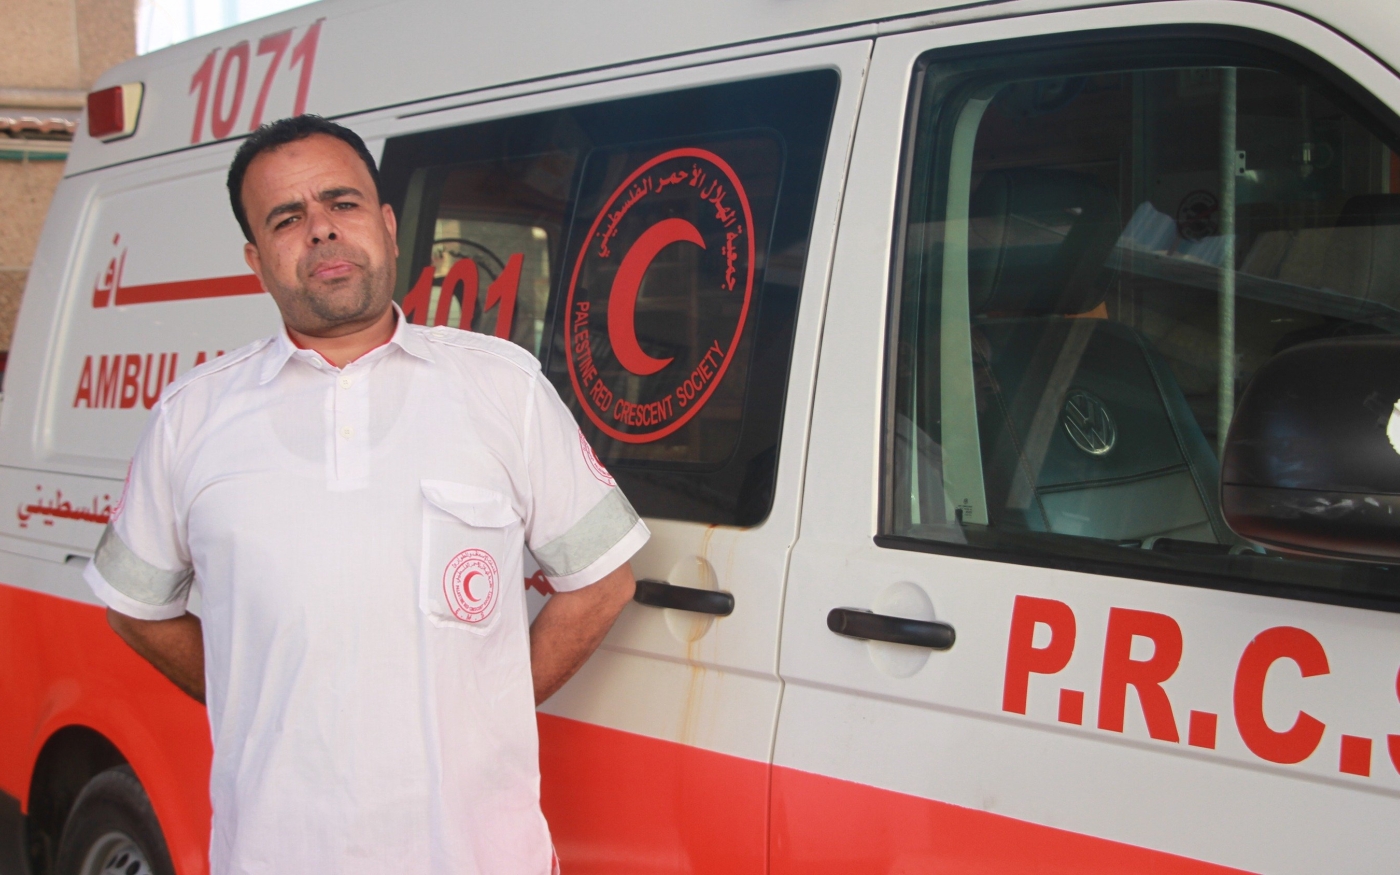 Ibrahim Abu al-Kas, secouriste, a perdu son collègue le plus proche en service lors de l’offensive israélienne sur Gaza en 2014 (MEE/Ahmed al-Sammak)